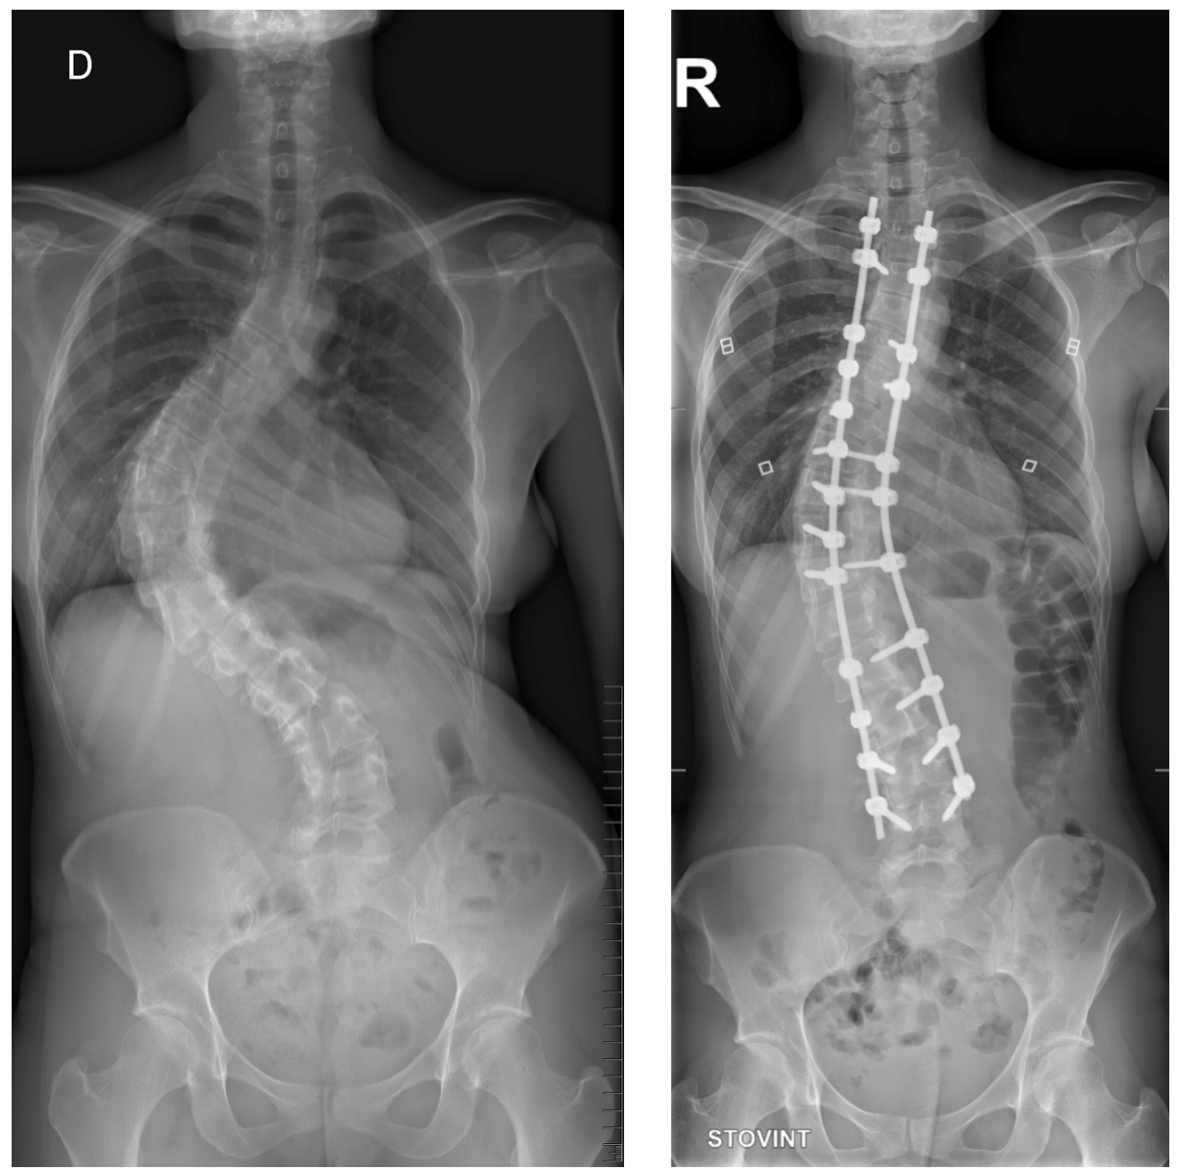 Suaugusiuju idiopatione skoliozė. Prieš operaciją (kairėje) - iškrypimo dydis apie 85 laipsniai (Cobb’o metodas), po operacijos (dešinėje) - apie 30 laipsnių.